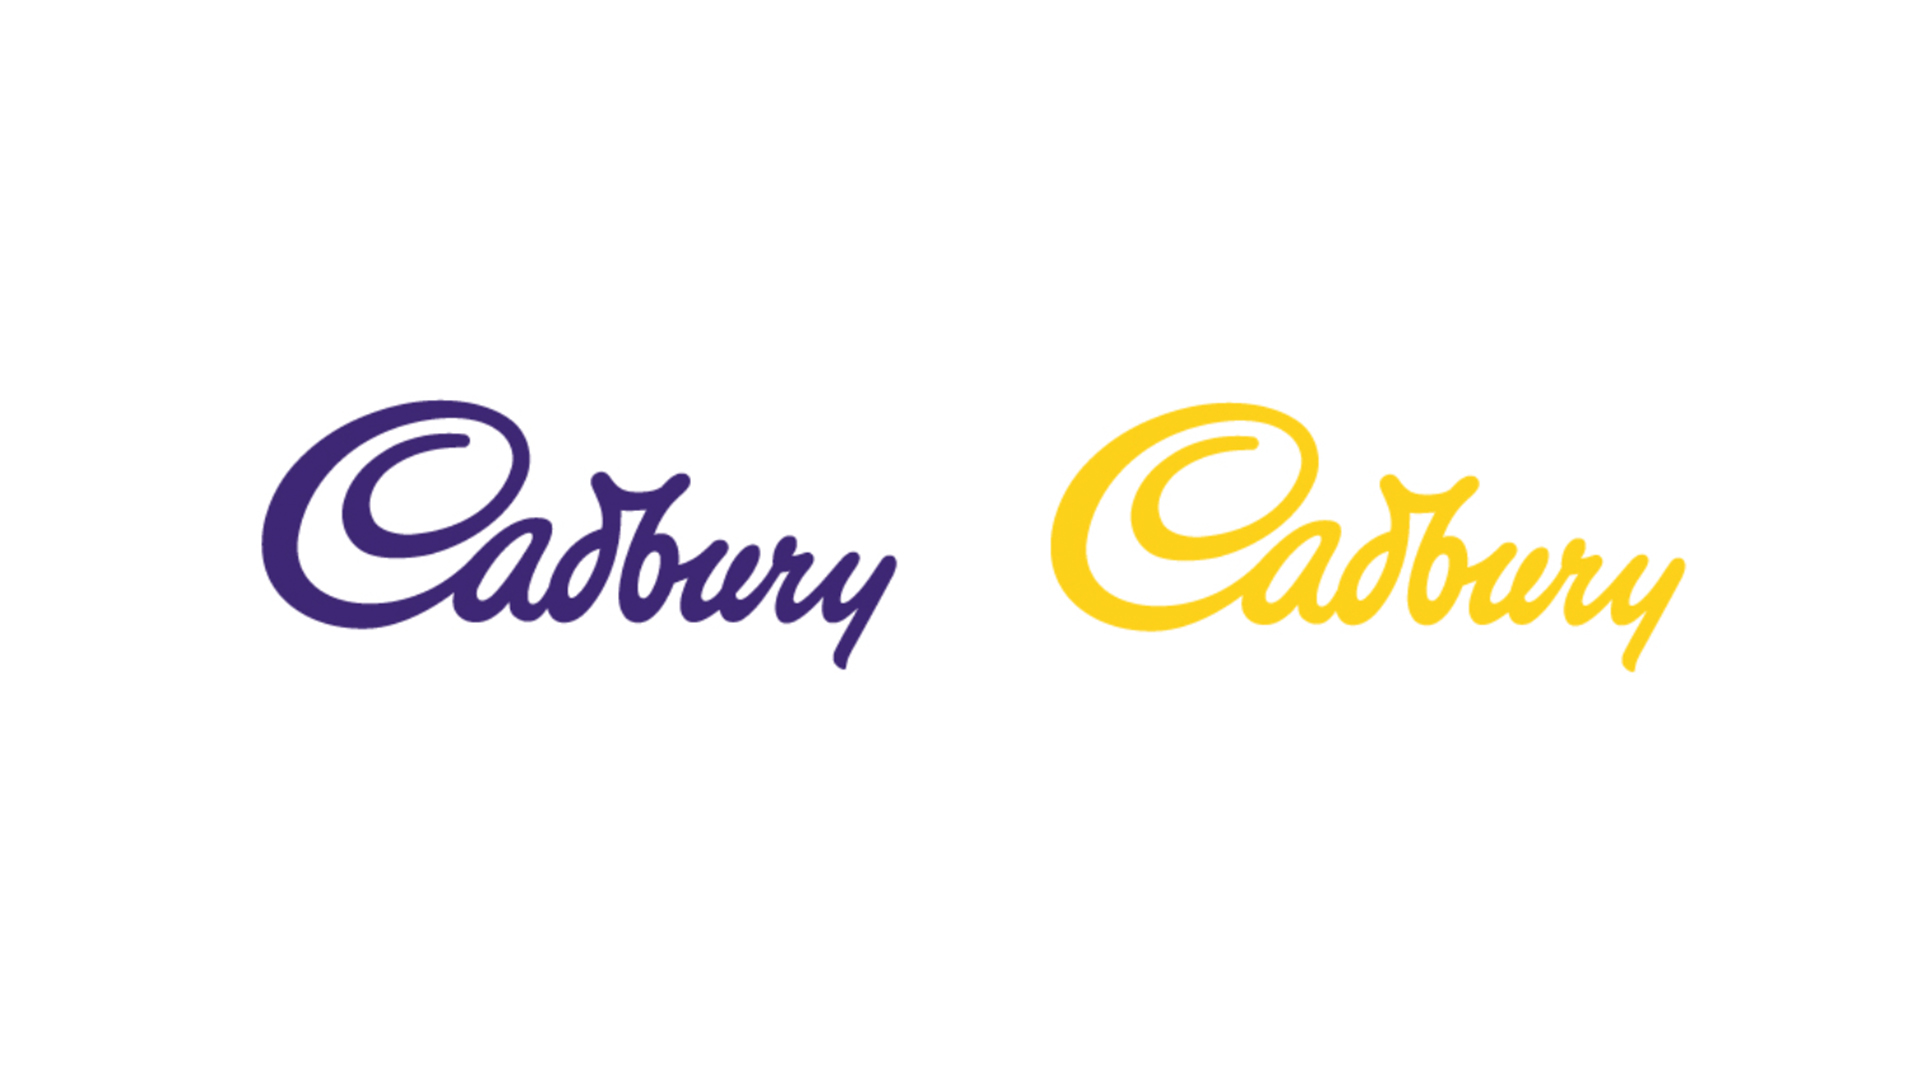 Cadbury logo in purple and yellow